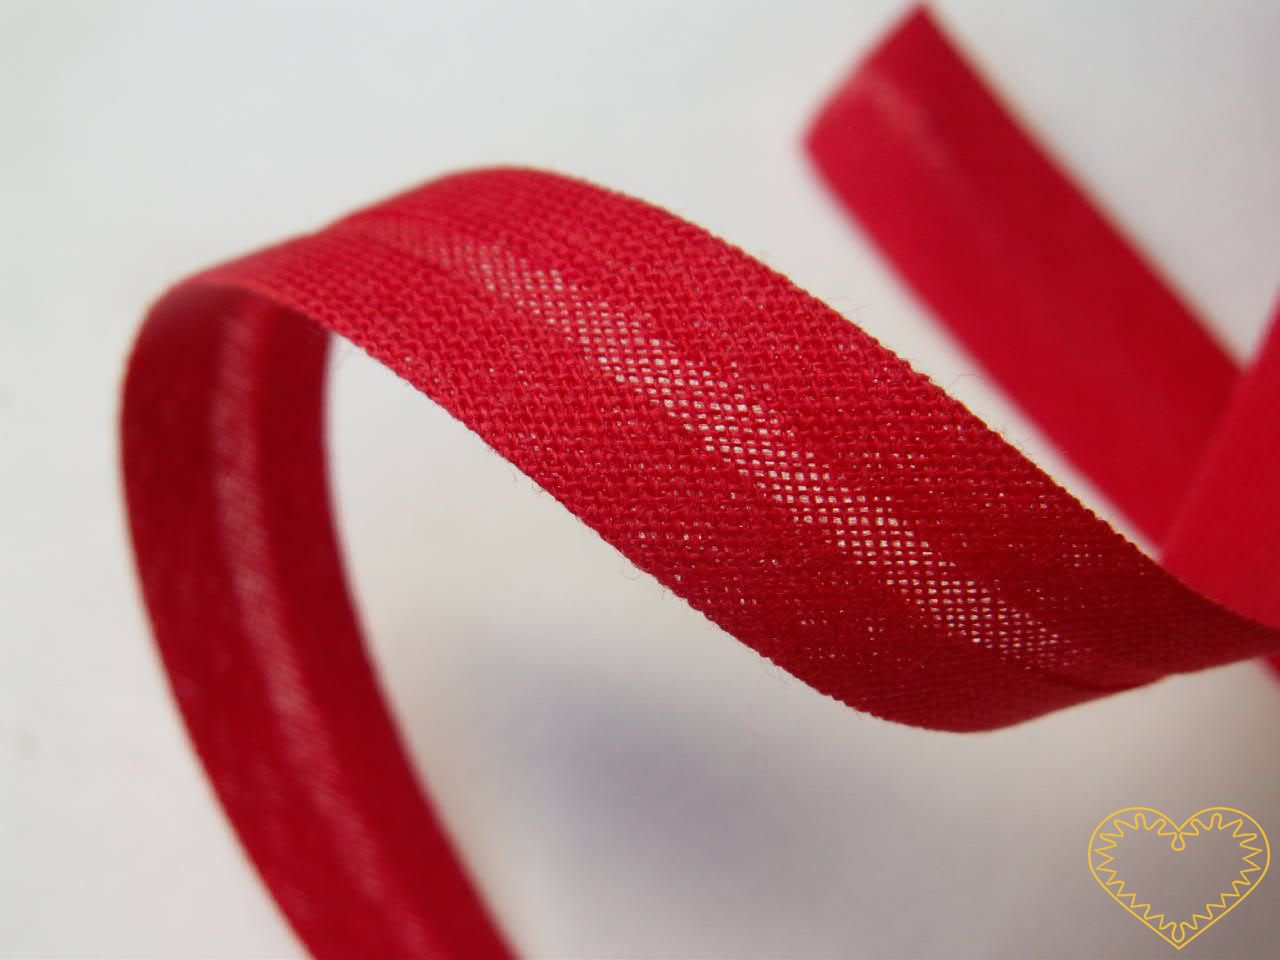 Šikmý proužek bavlněný červený, zažehlený z obou stran - šíře 1,4 cm. Varianta bílá a červená. Proužek je velmi vhodný na lemování jak bytového textilu (např. ubrusů, prostírání, polštářků, deček, chňapek), tak různých typů oděvů (např. trika, košile